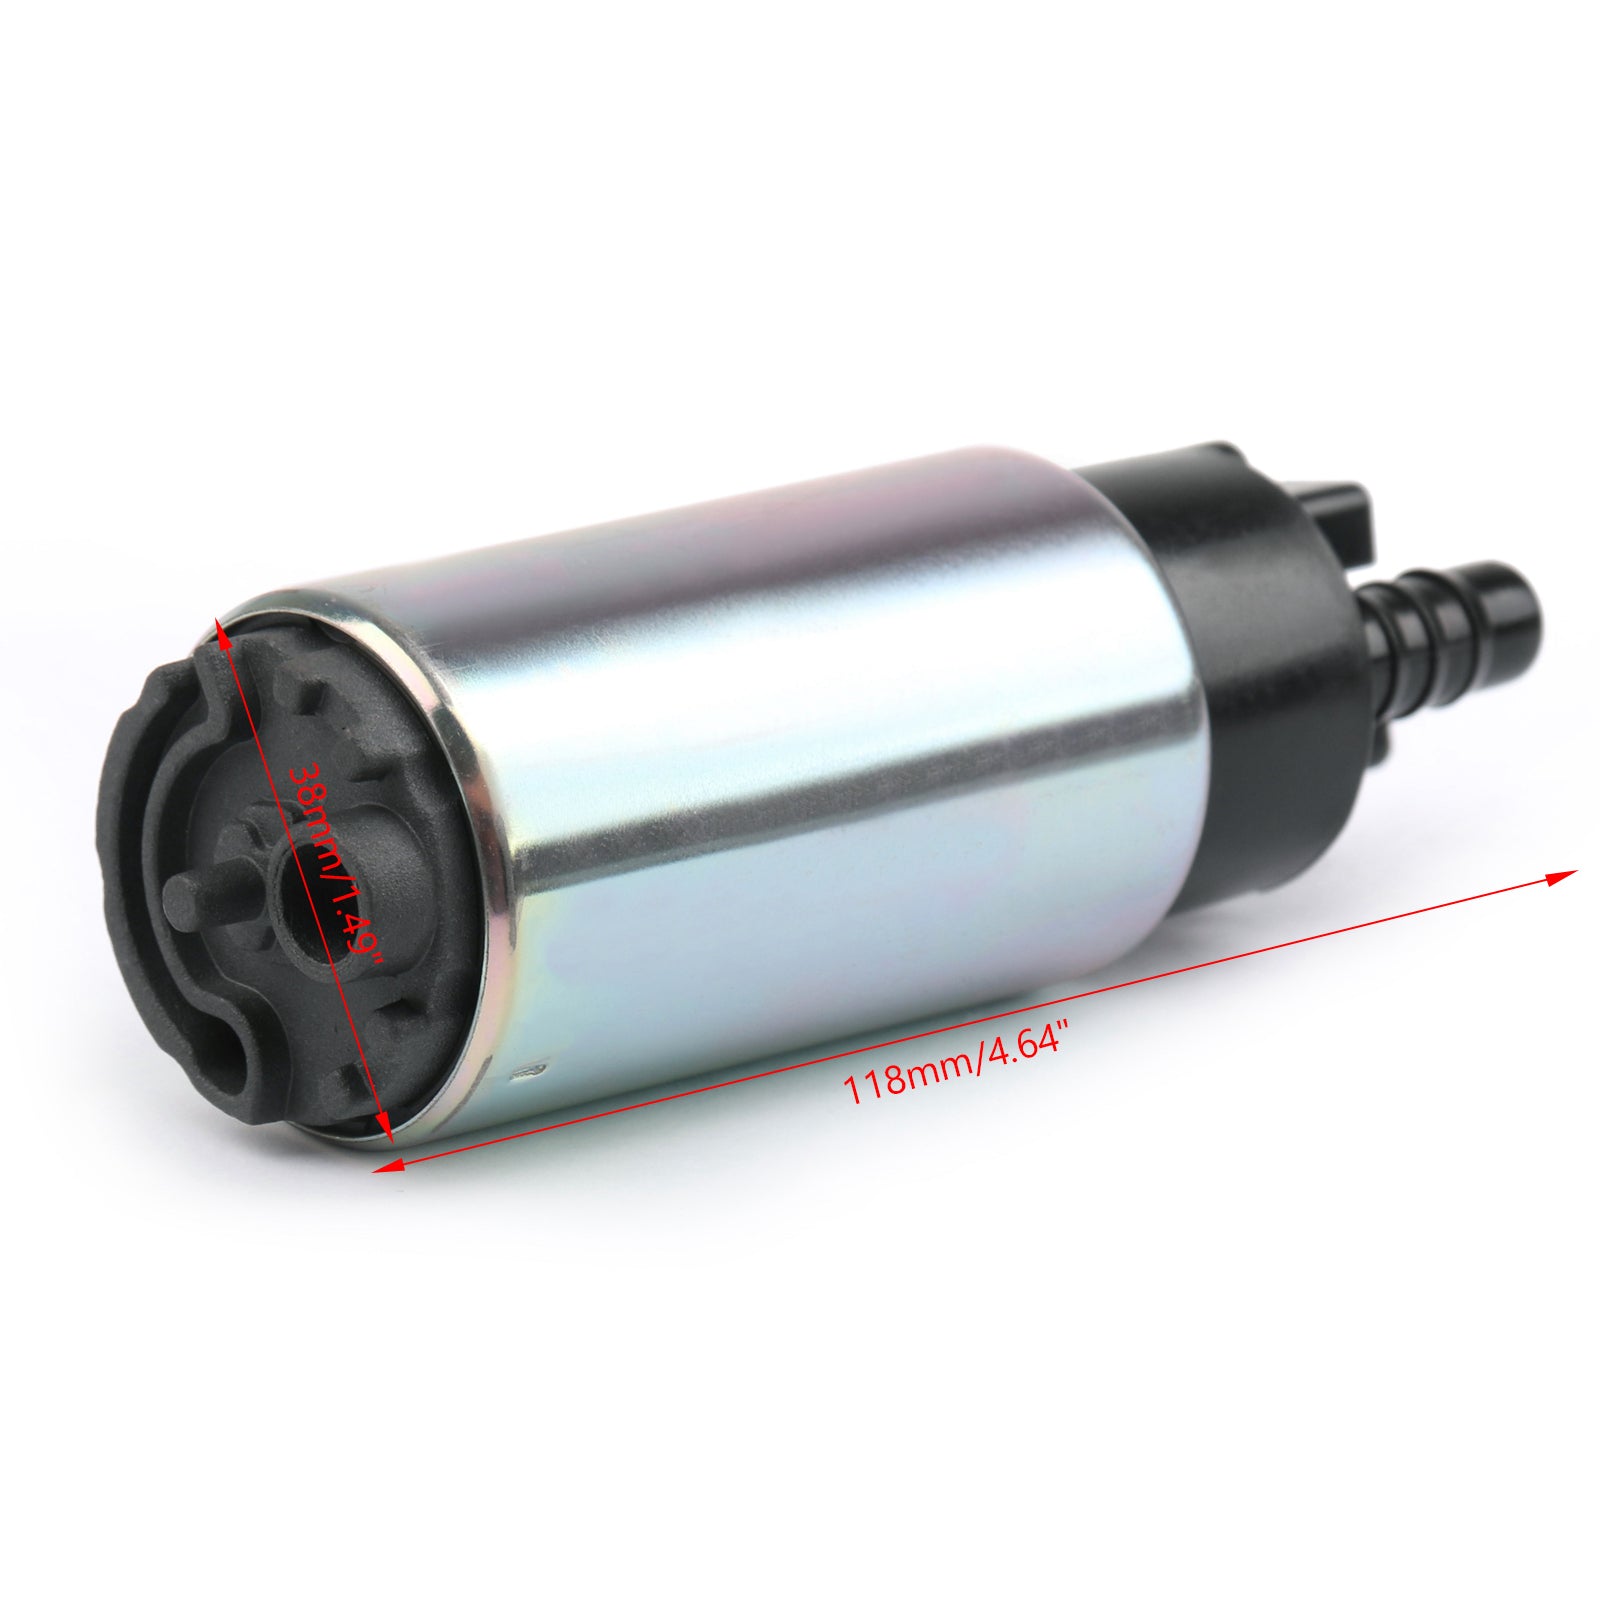 Pompa del carburante per BMW R1200GS F700 800 GS R1200 K1200 R1150R 2000-2015 e filtro